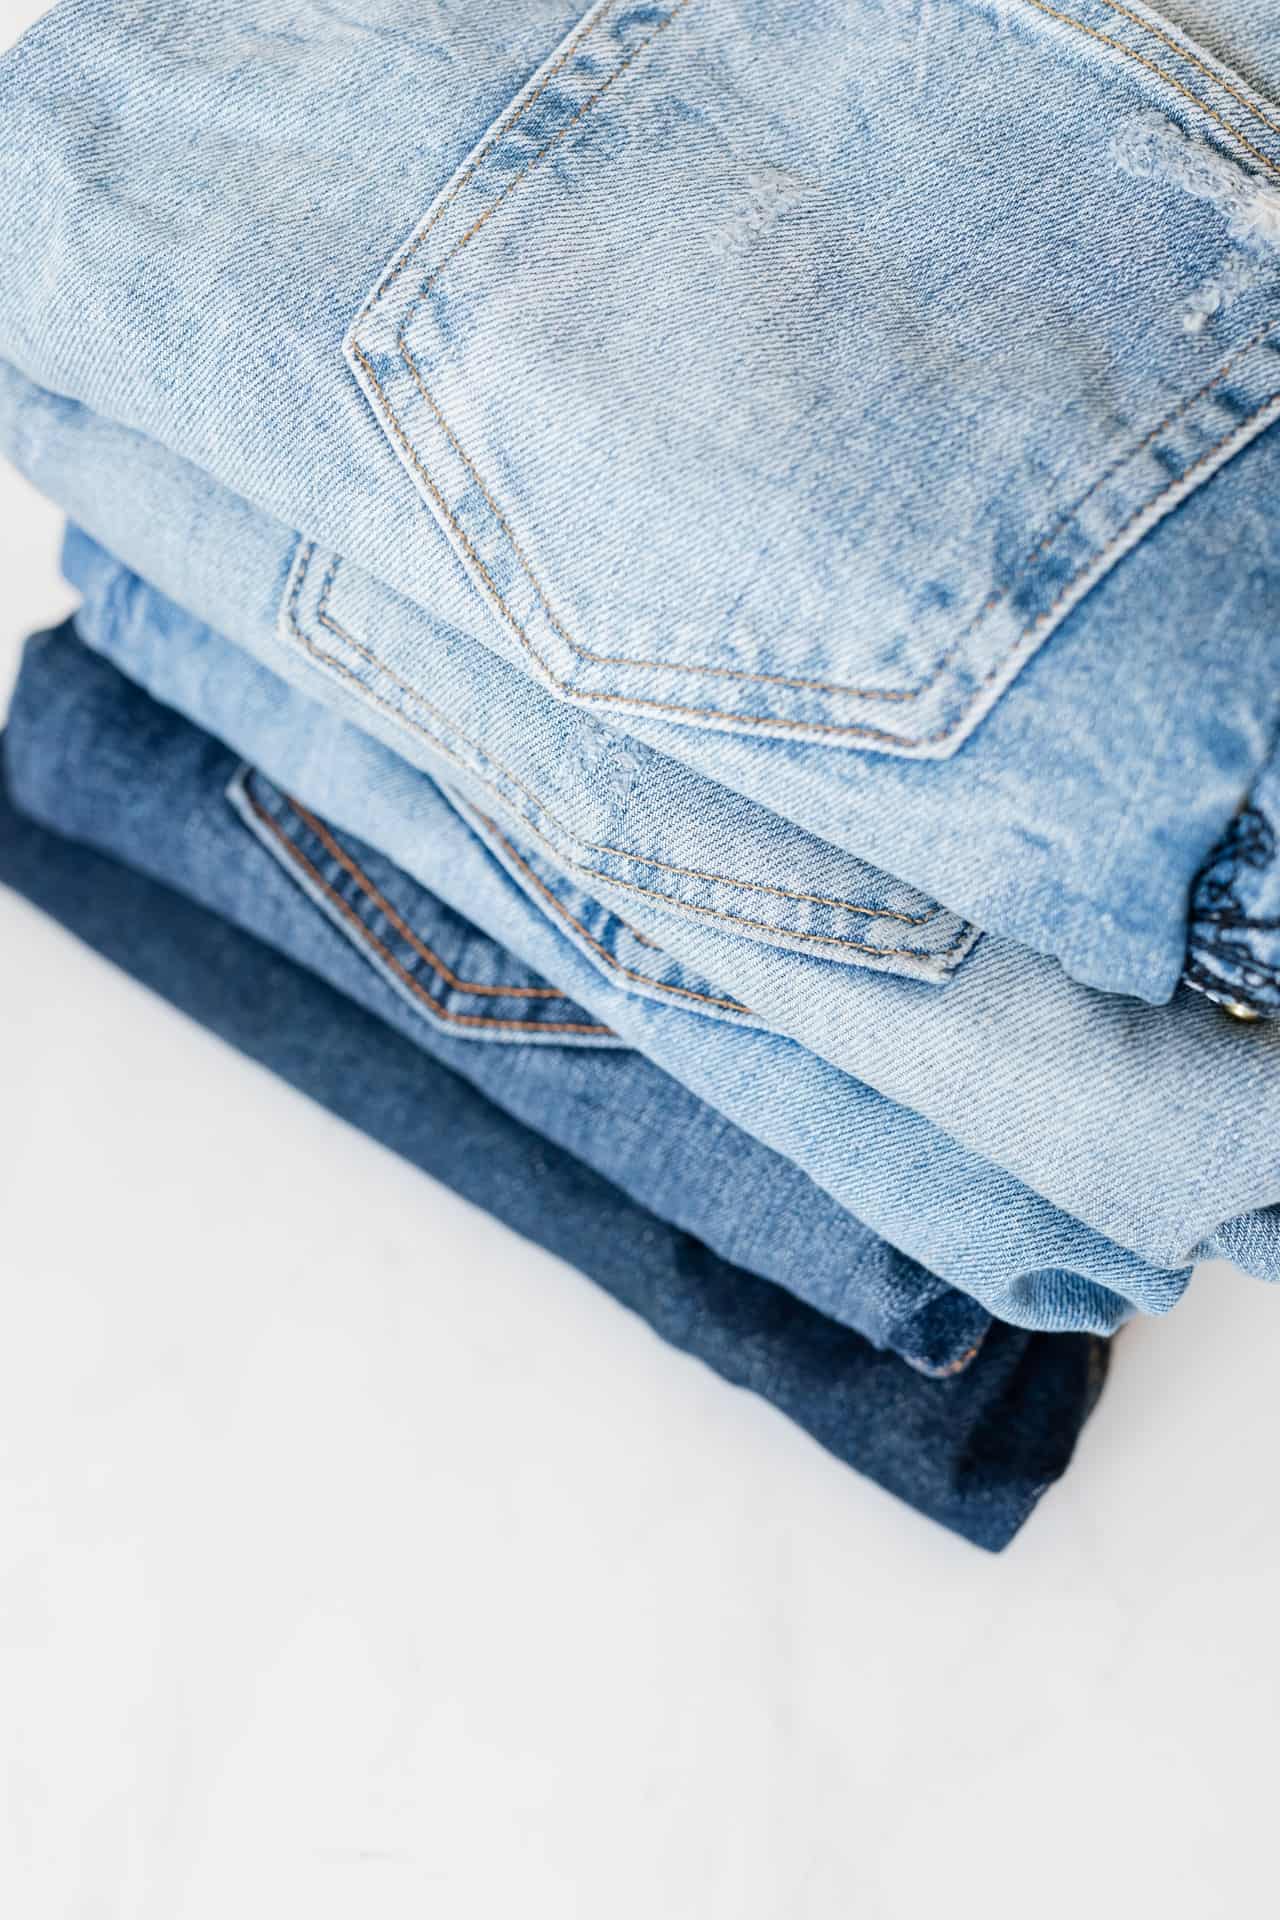 Jak powinno dbać się o jeansy, by służyły nam w dobrym stanie przez lata?